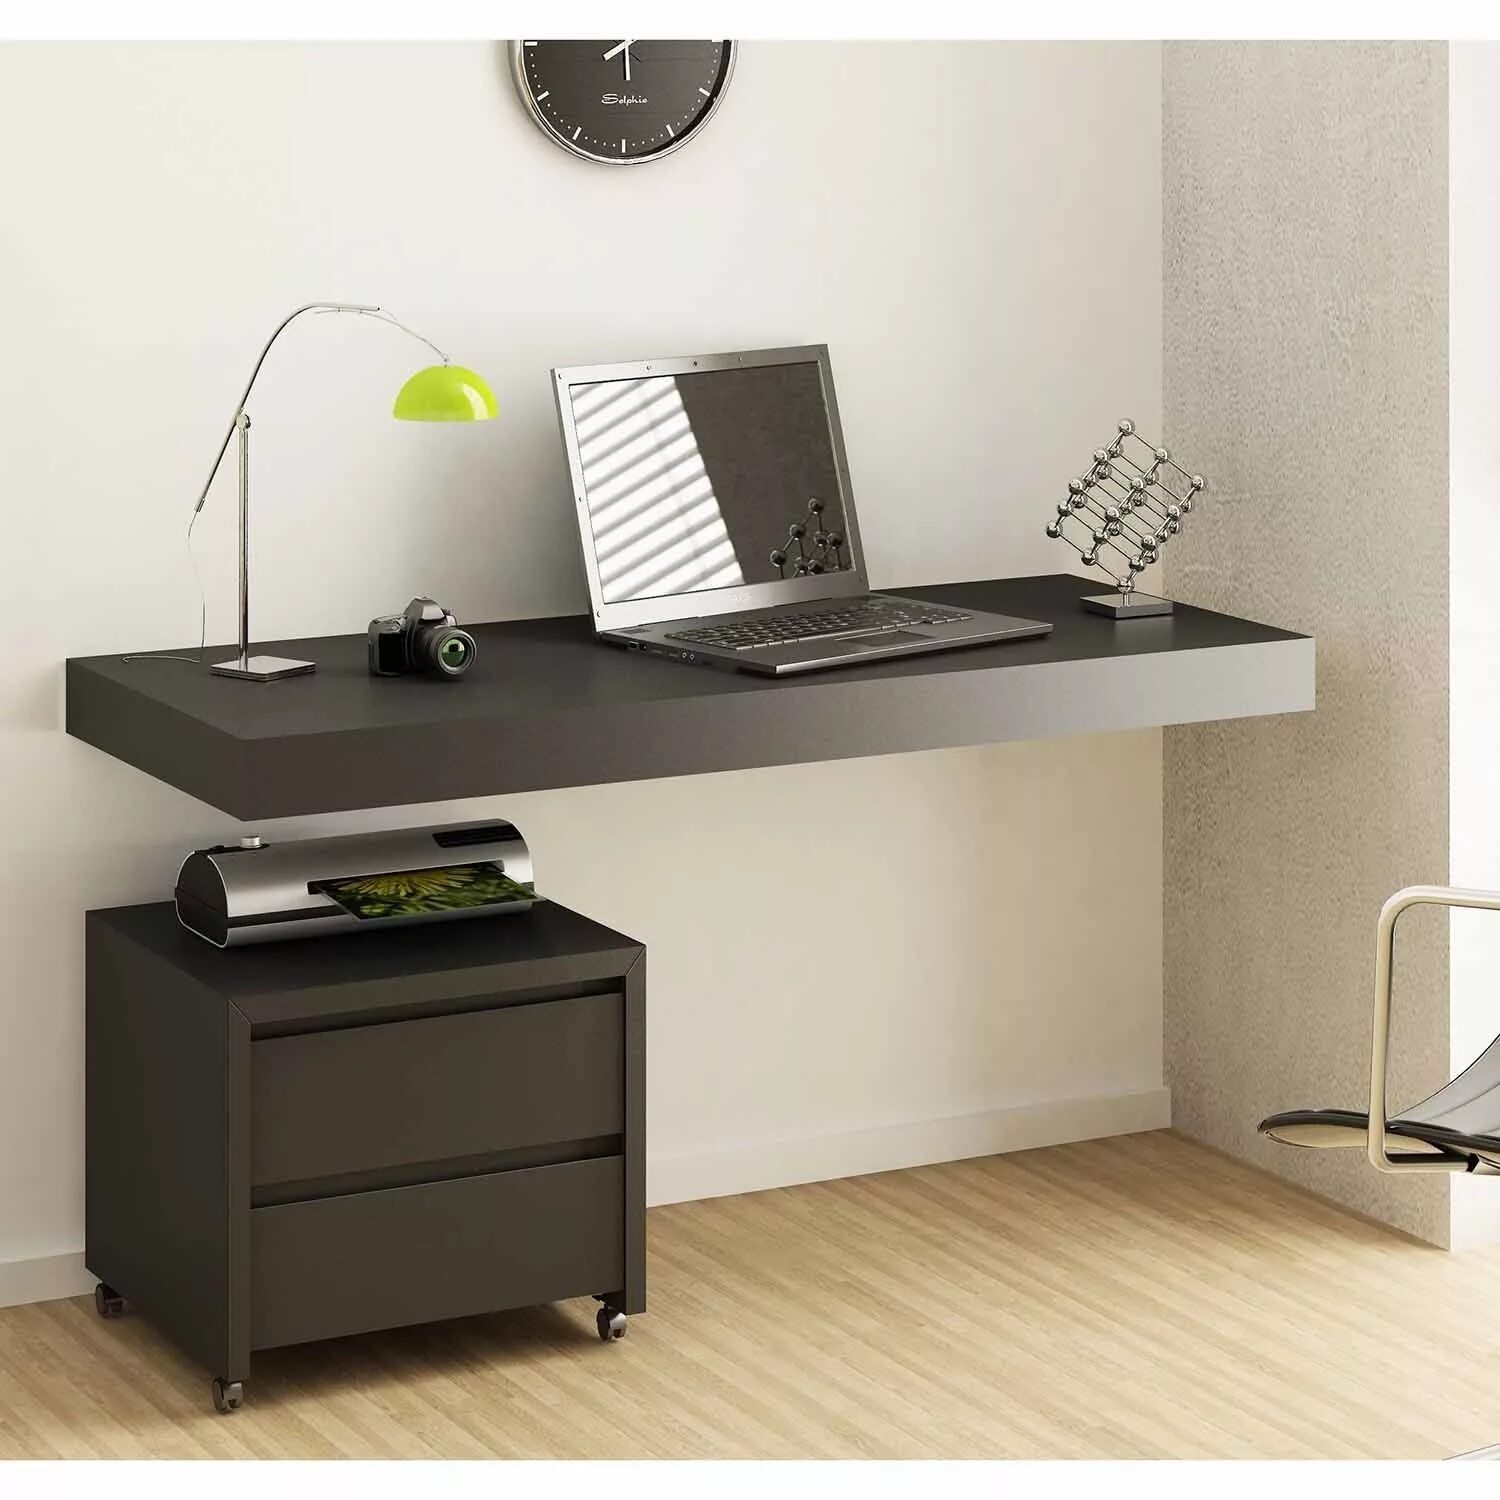 Письменный стол в20 BMS. Навесной письменный стол. Компьютерный стол к стене. Письменный стол с креплением к стене. Полка под стол купить